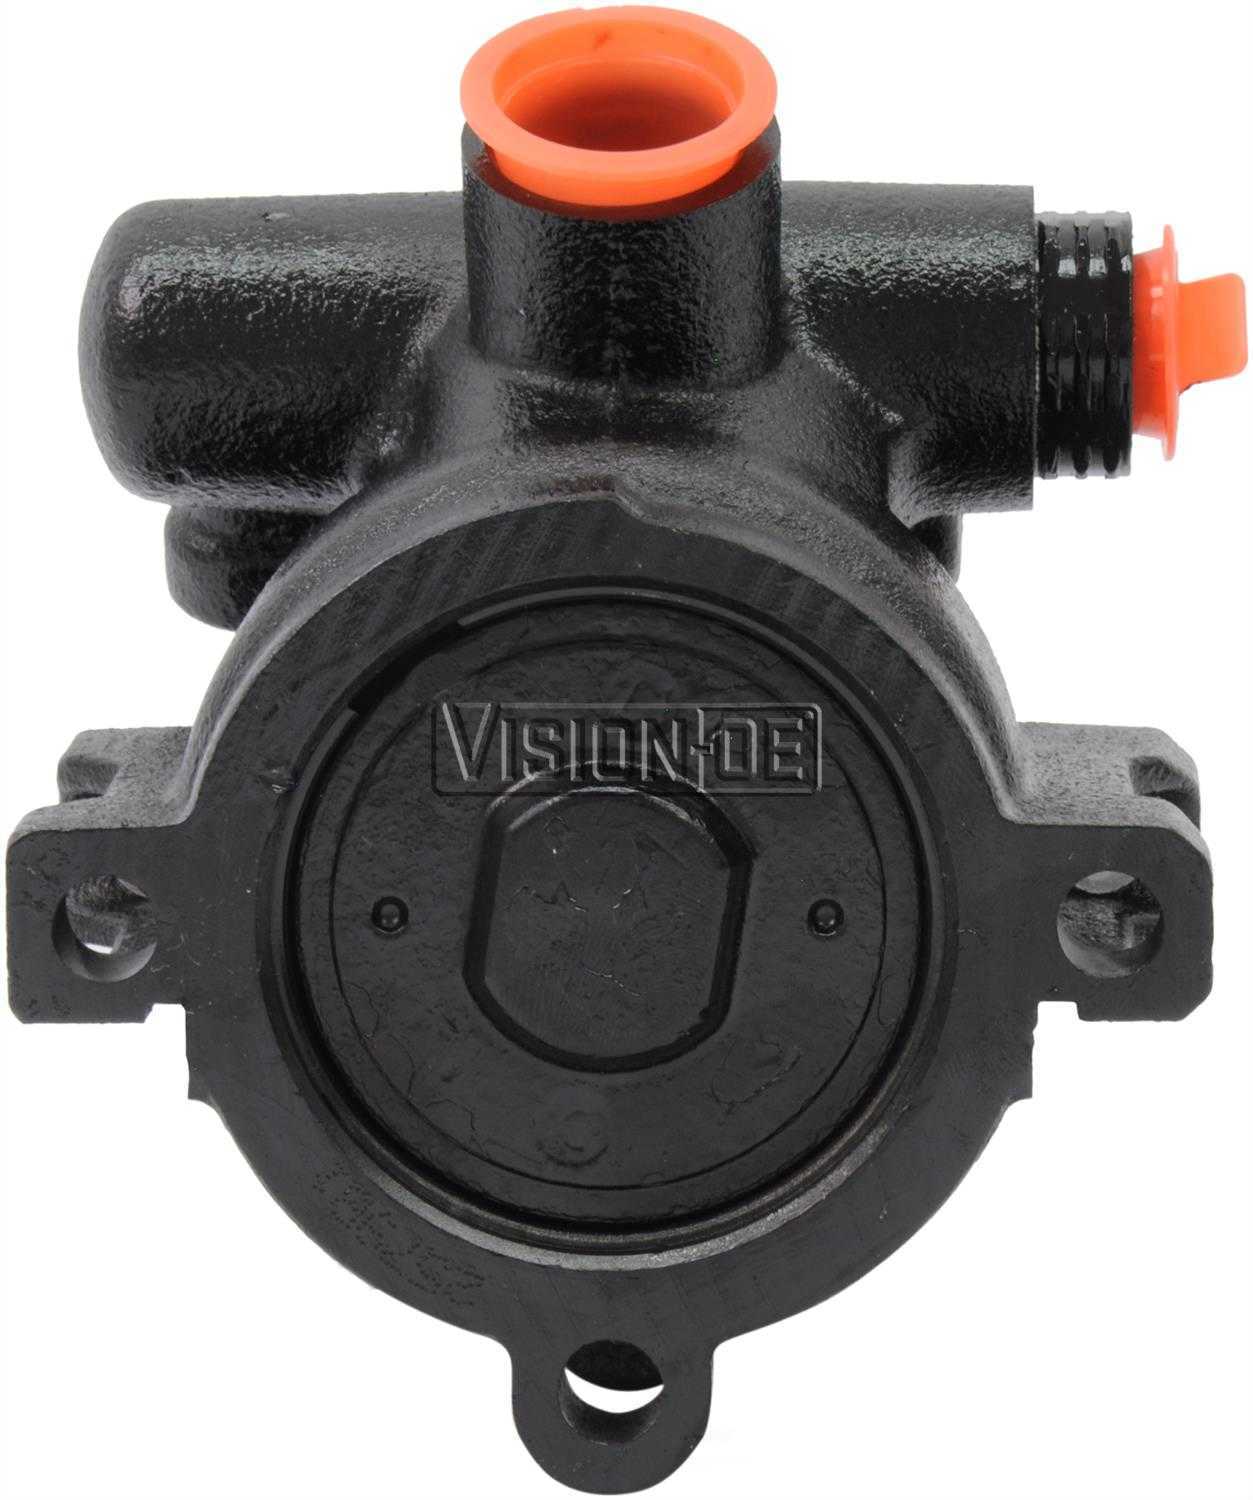 VISION-OE - Reman Power Steering Pump - VOE 733-0111